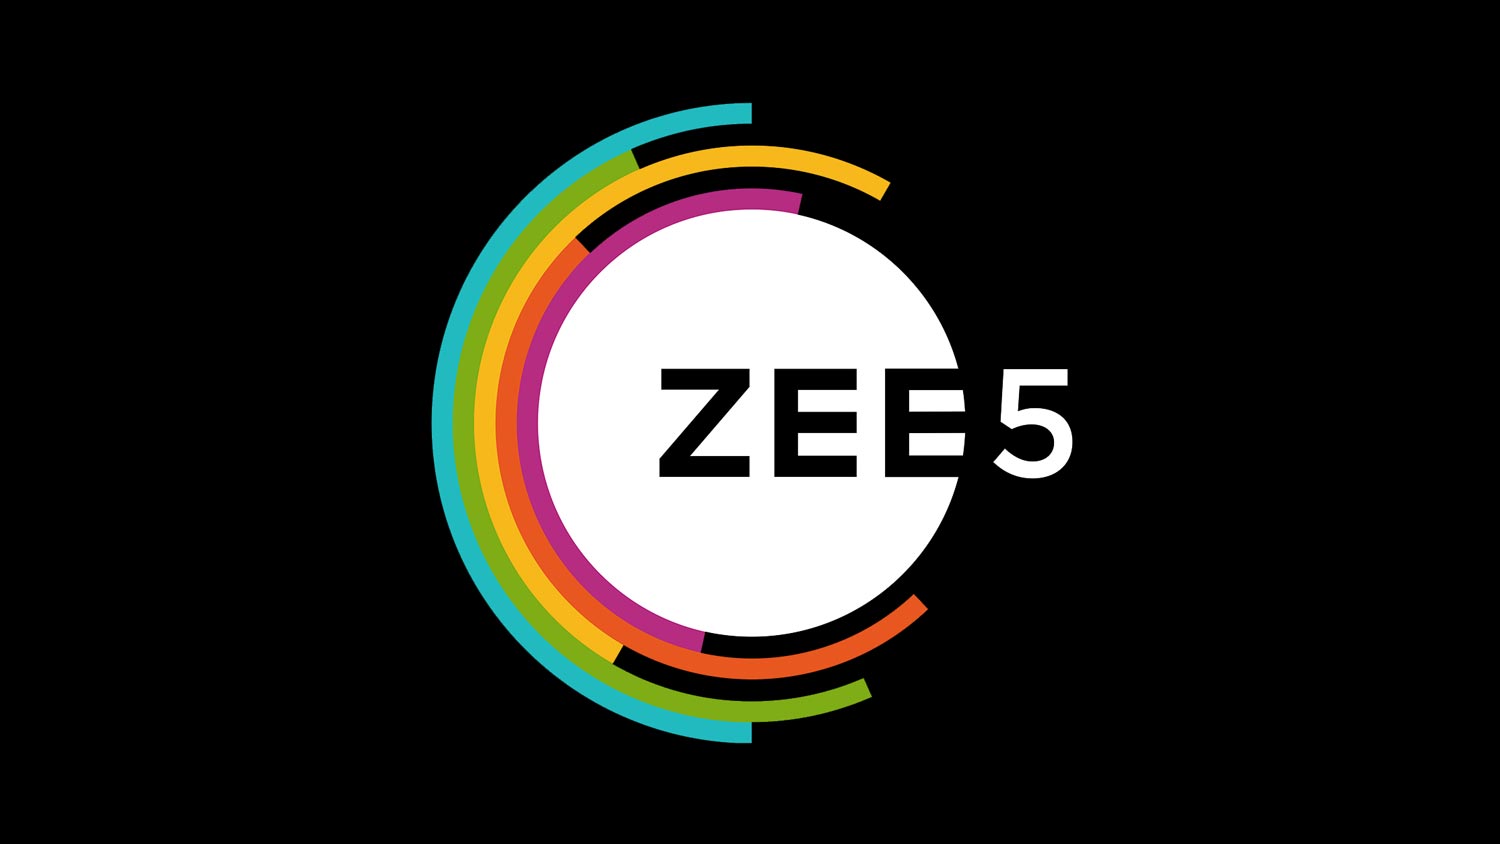 Perkhidmatan Penstriman Video ZEE5 Ditawarkan Kepada Pengguna Celcom Dengan Kerjasama Apigate